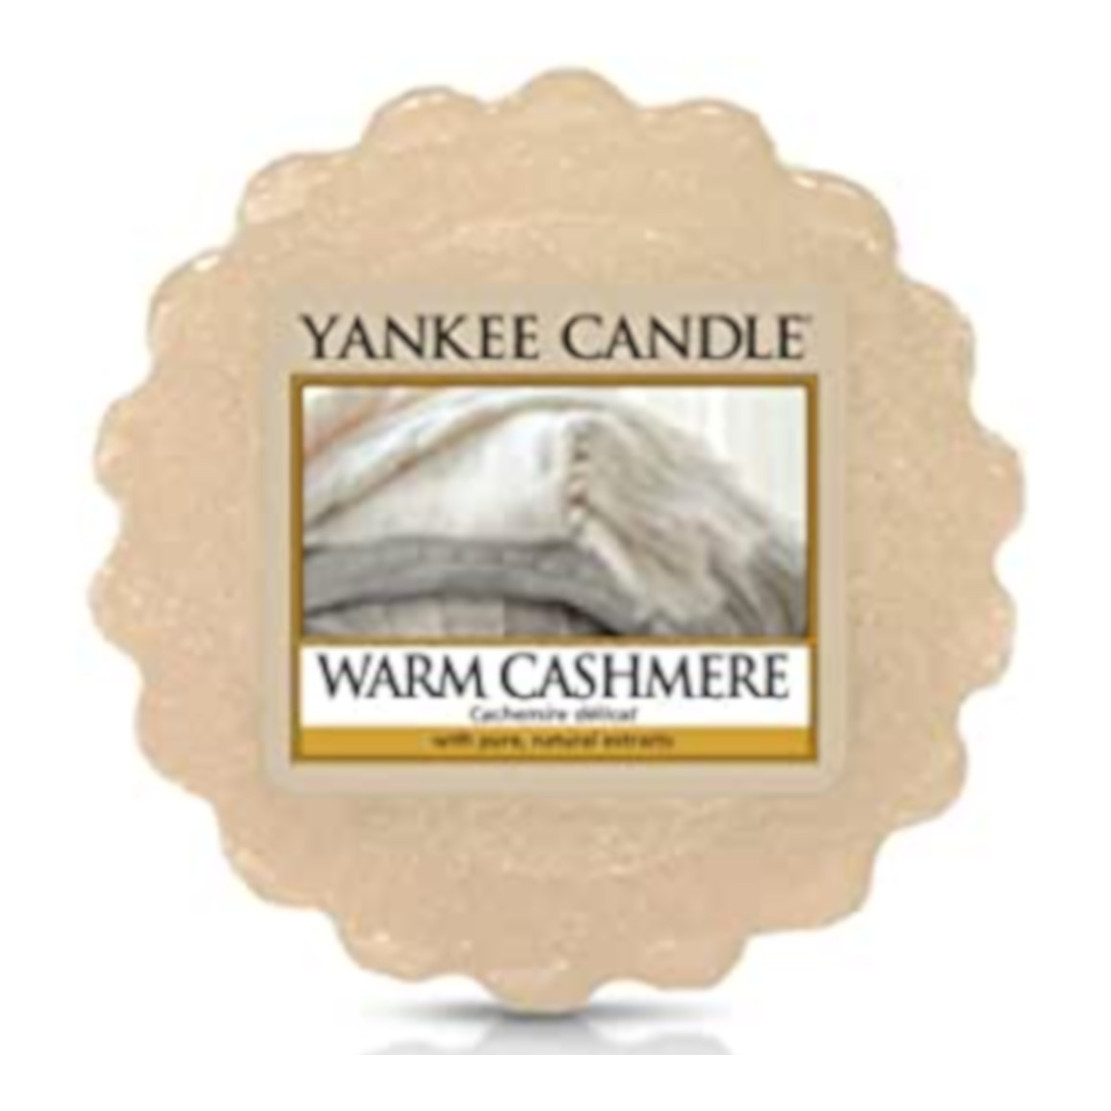 Yankee Candle Warm Cashmere Wax Melt